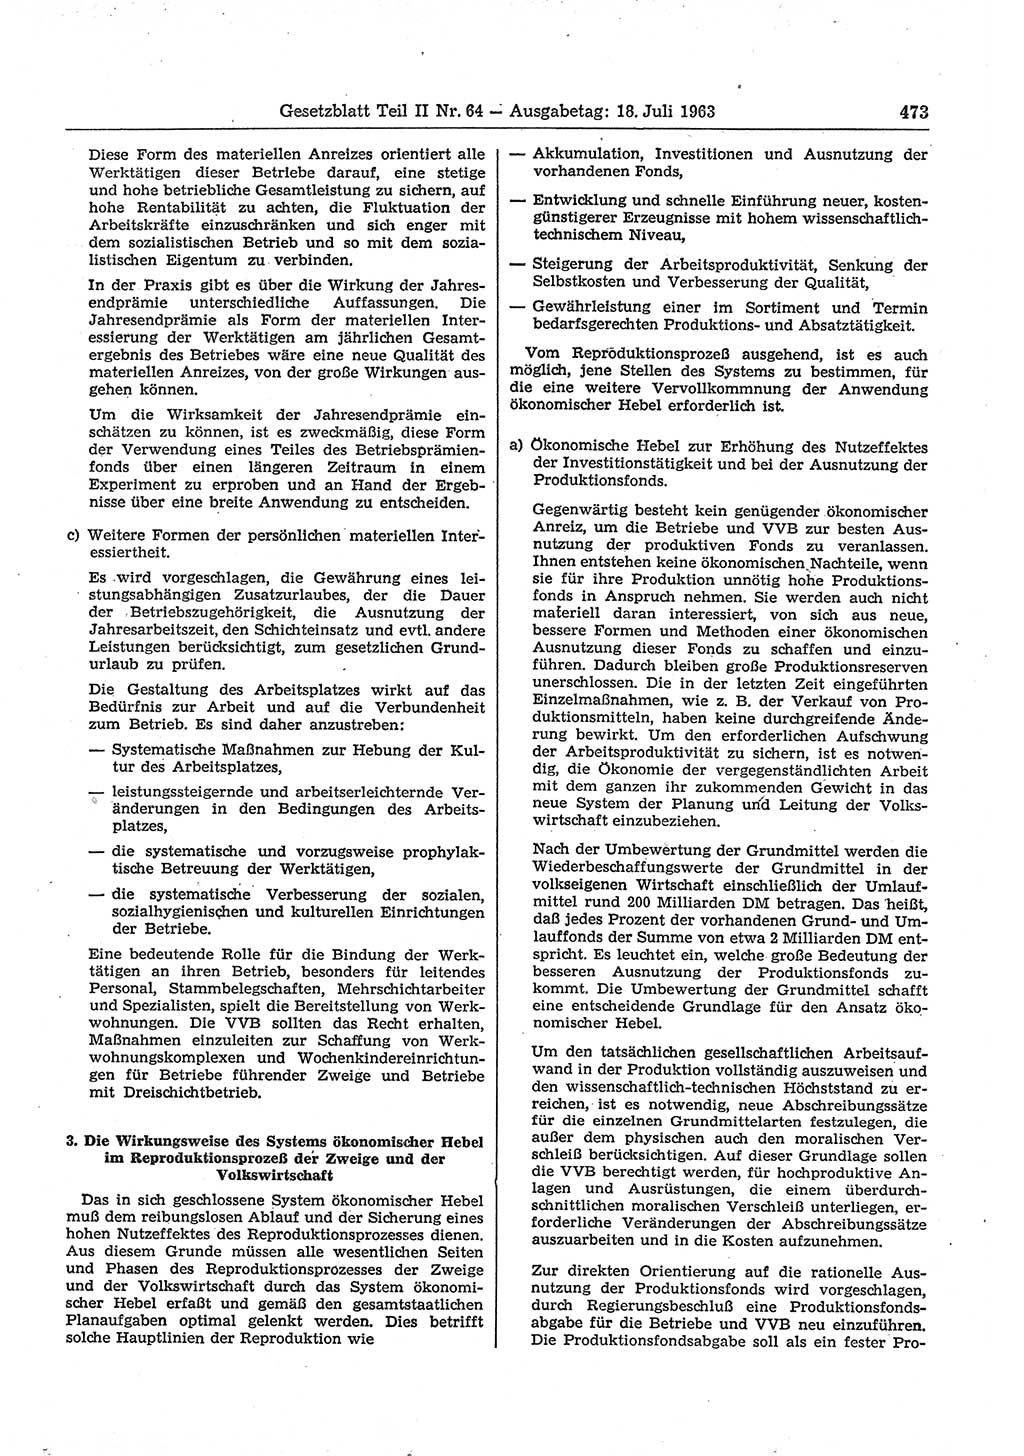 Gesetzblatt (GBl.) der Deutschen Demokratischen Republik (DDR) Teil ⅠⅠ 1963, Seite 473 (GBl. DDR ⅠⅠ 1963, S. 473)